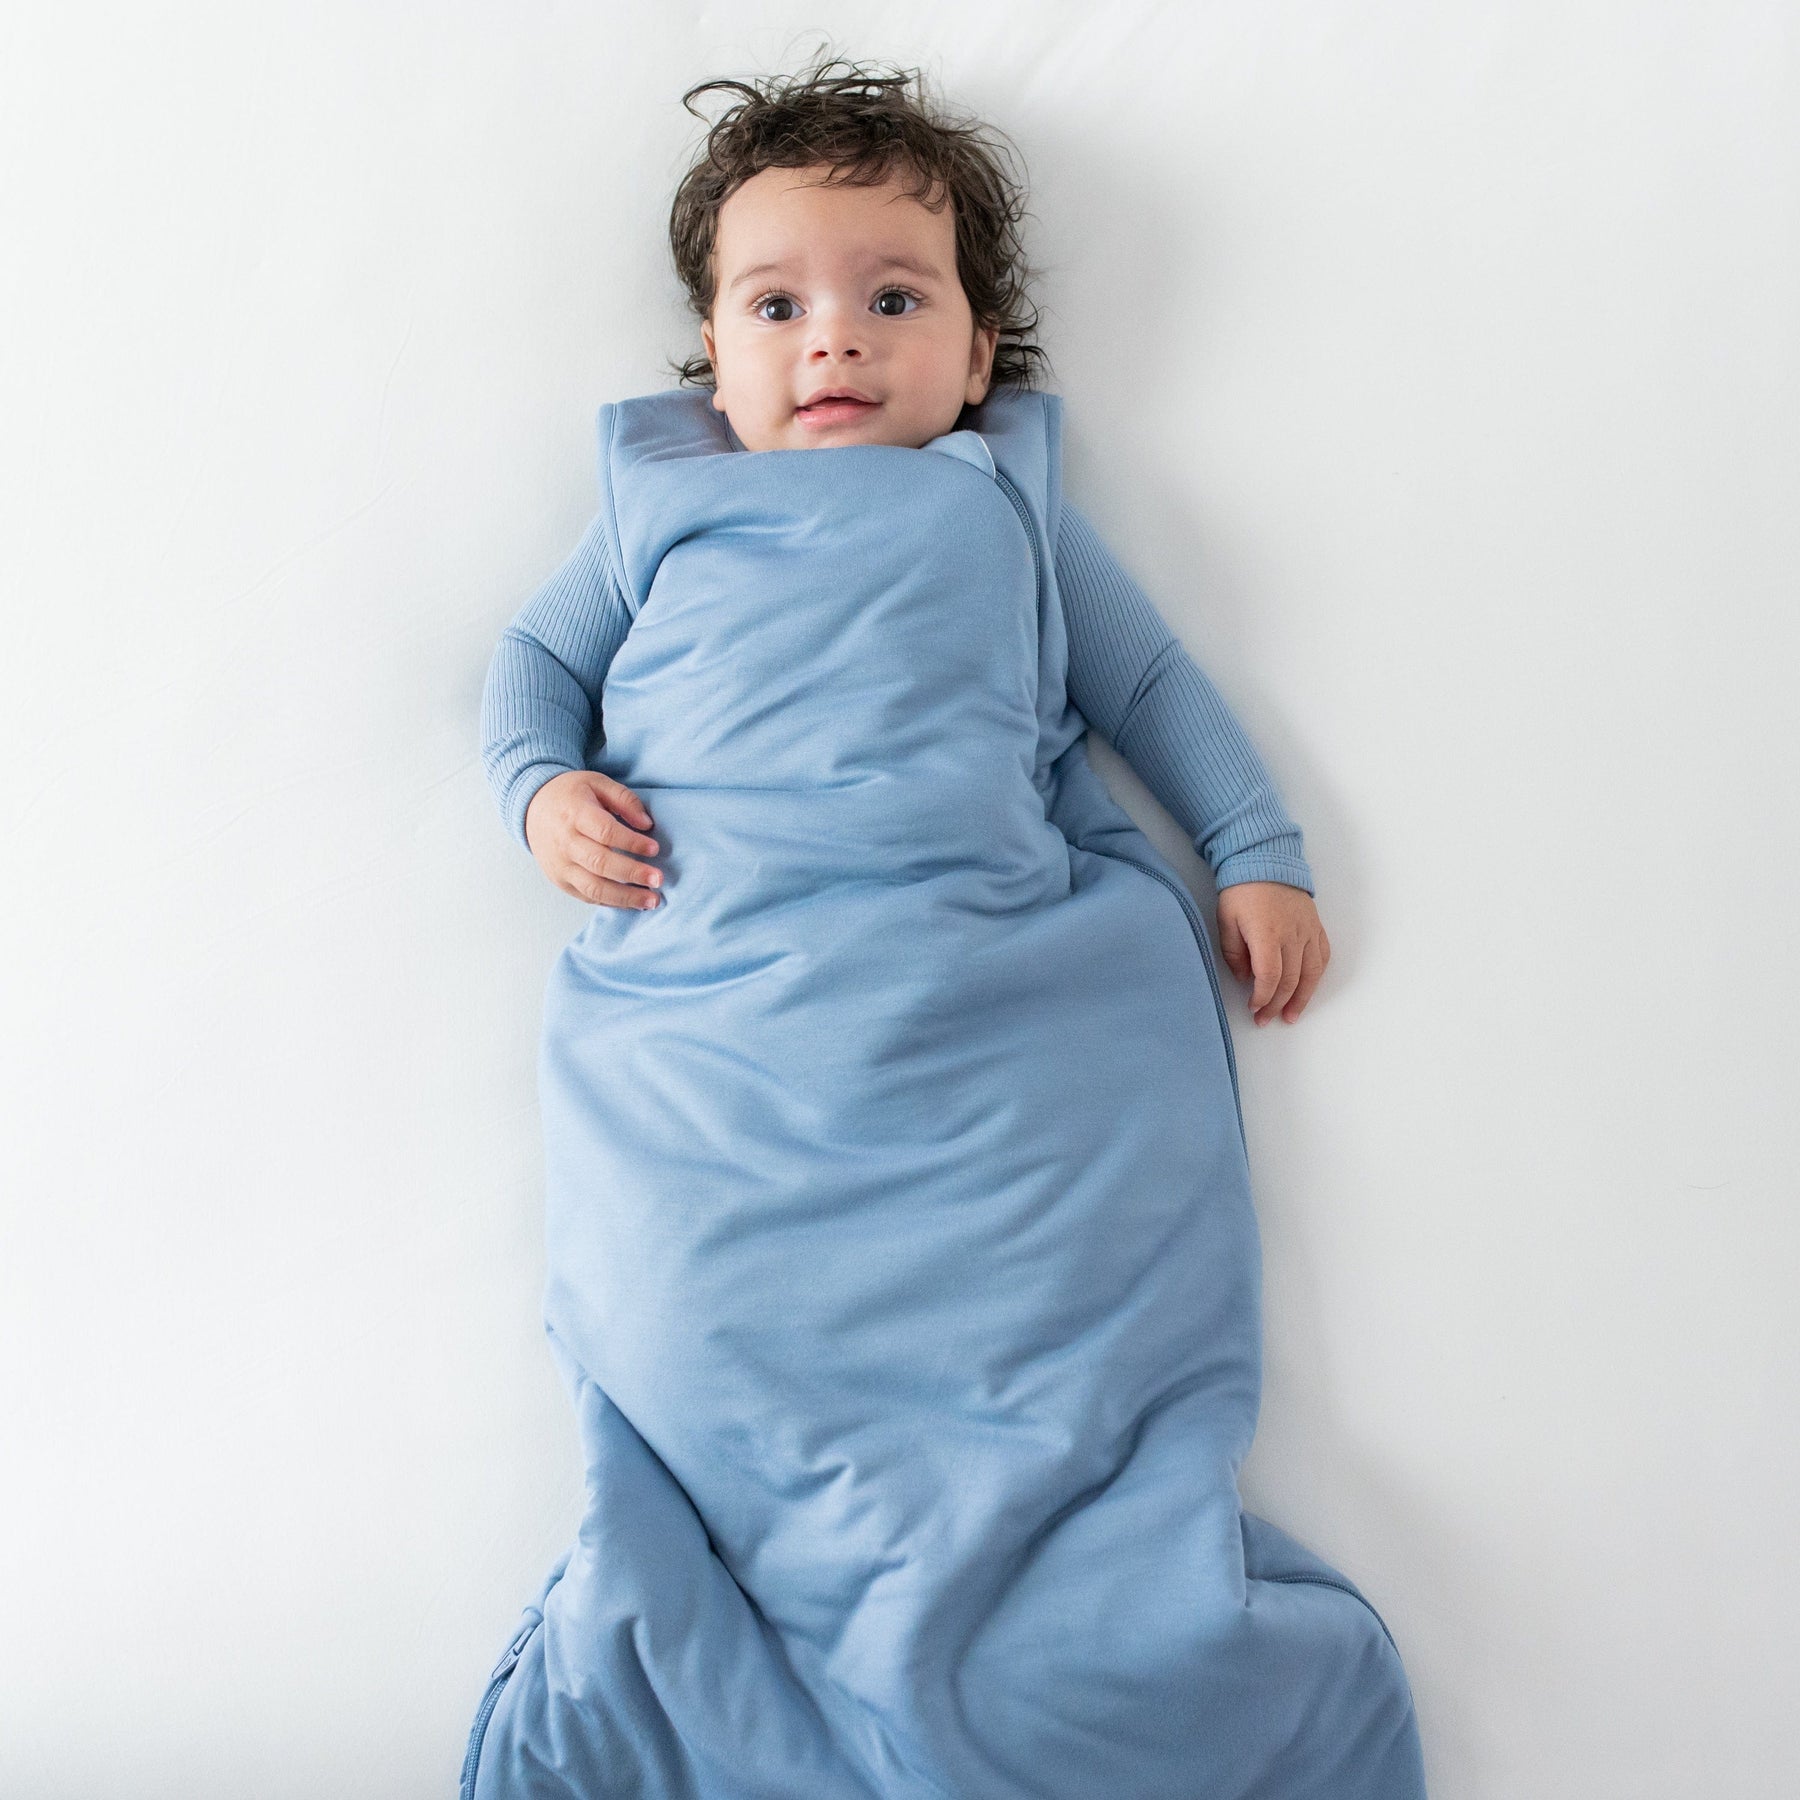 Baby wearing Kyte Baby Sleep Bag TOG 2.5 in Slate blue